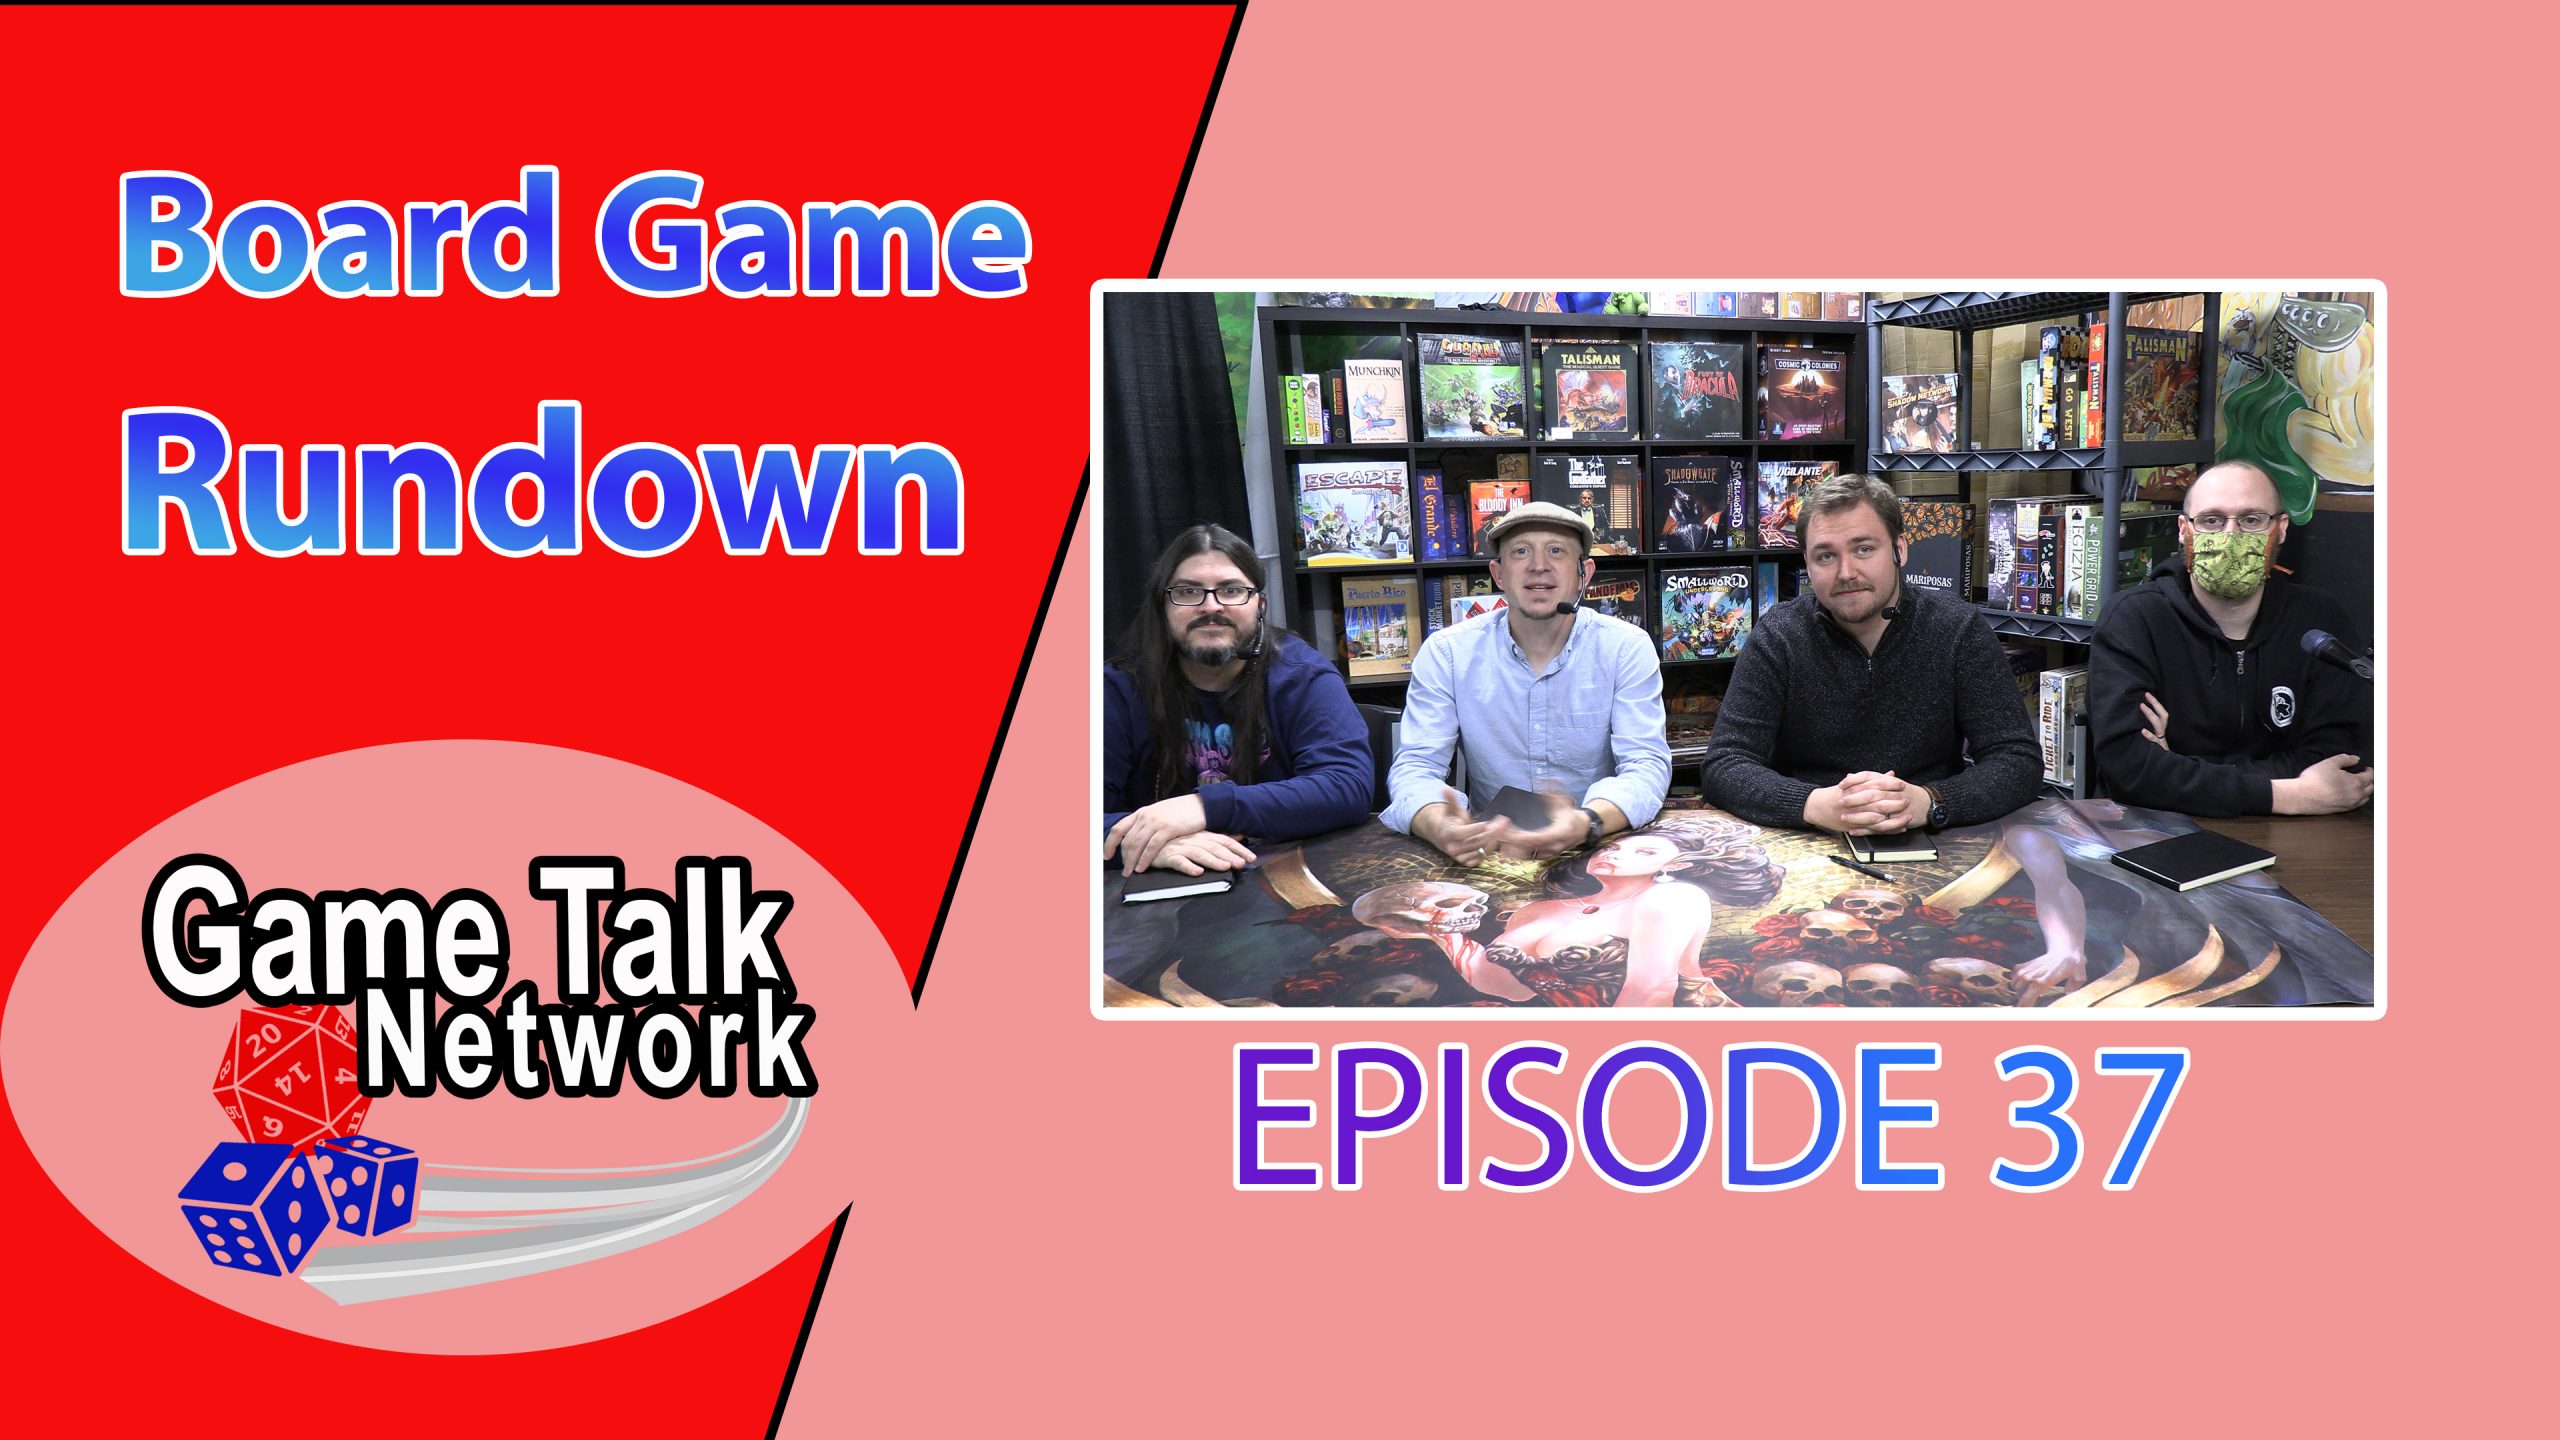 Board Game Rundown Episode 37: The BIG List Part 1